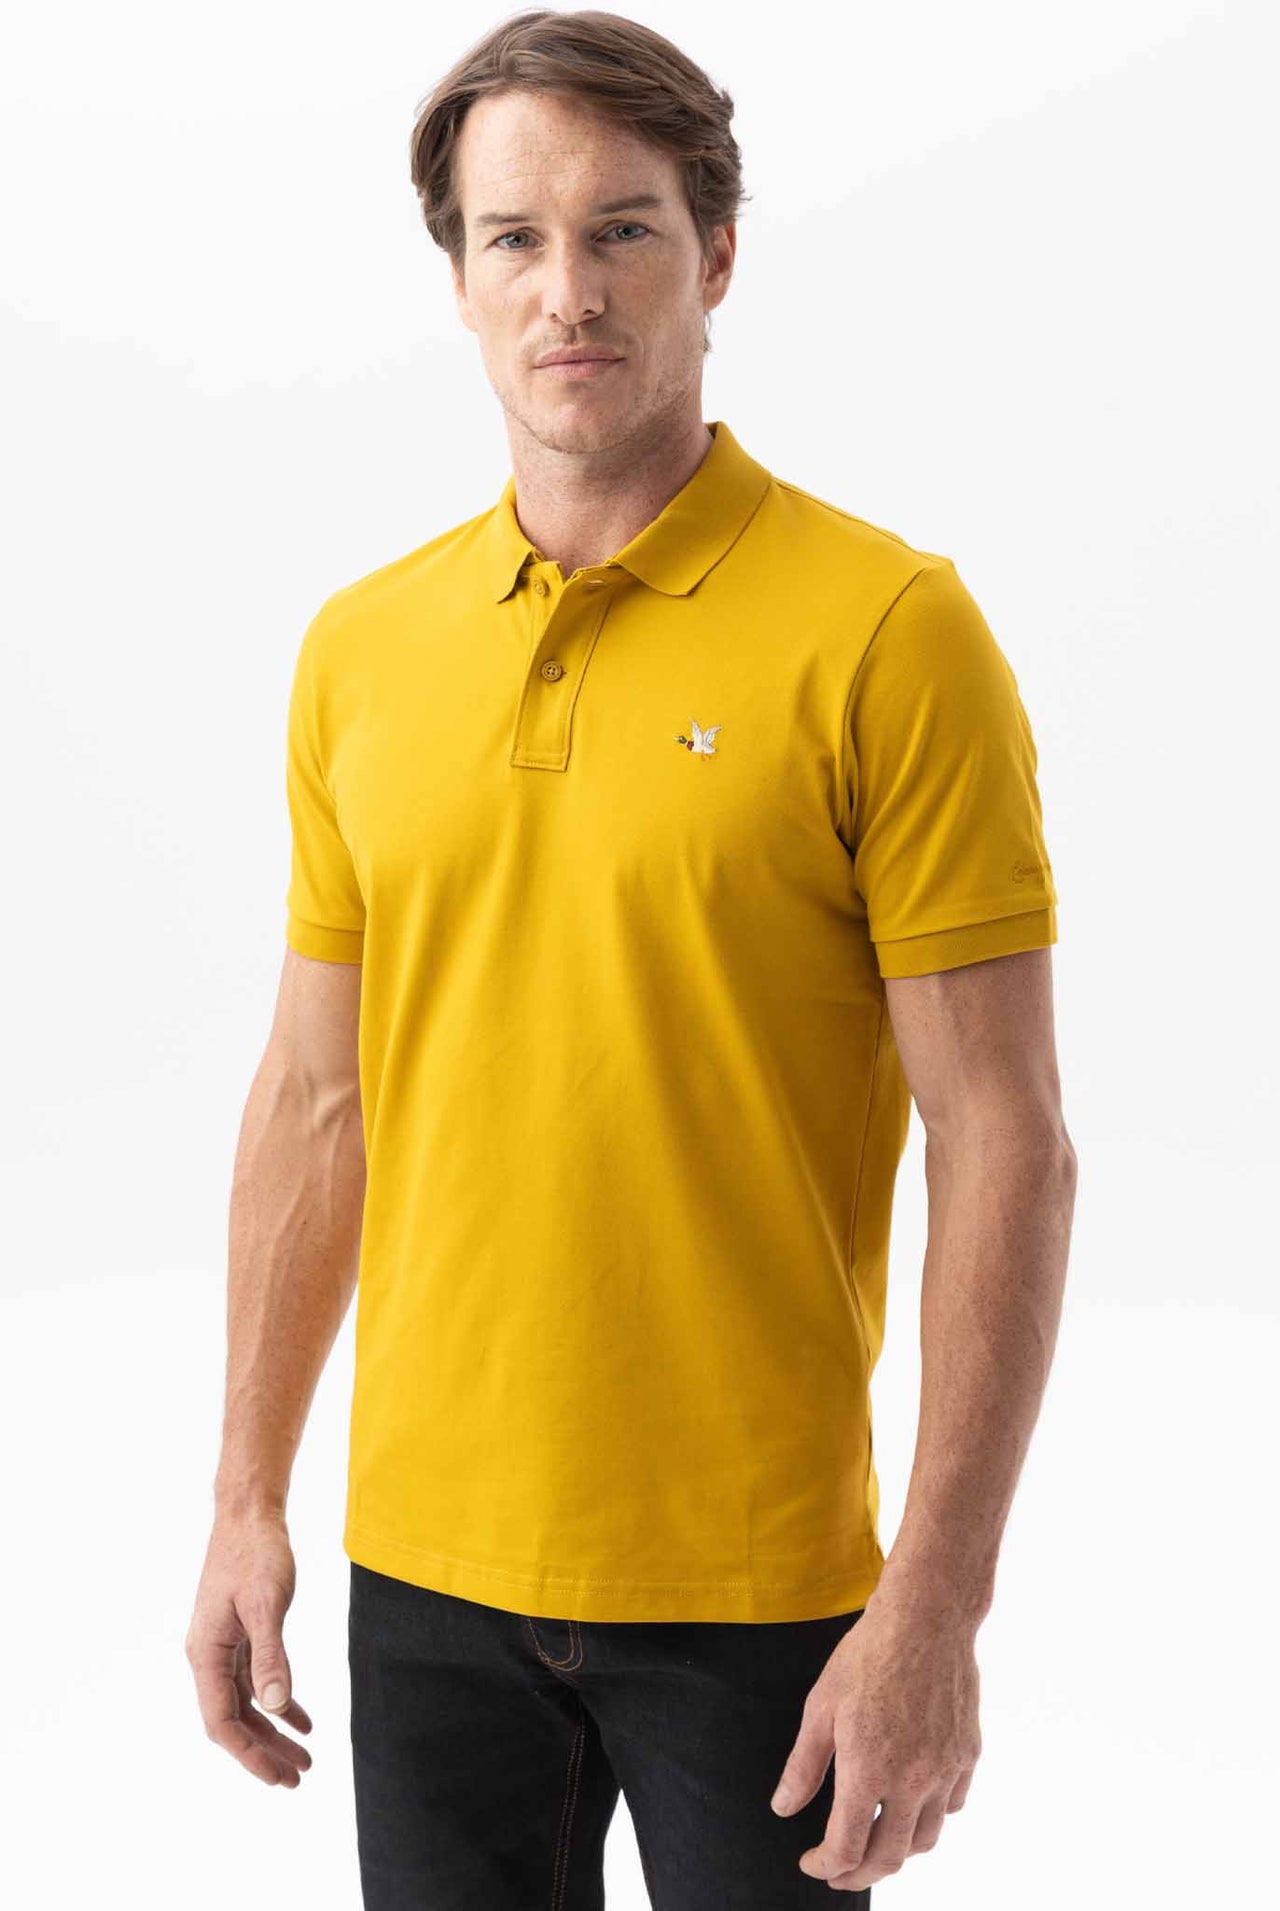 Camiseta Tipo Polo Chevignon Slim Fit Manga Corta, Cuello Tejidos Tono Amarillo